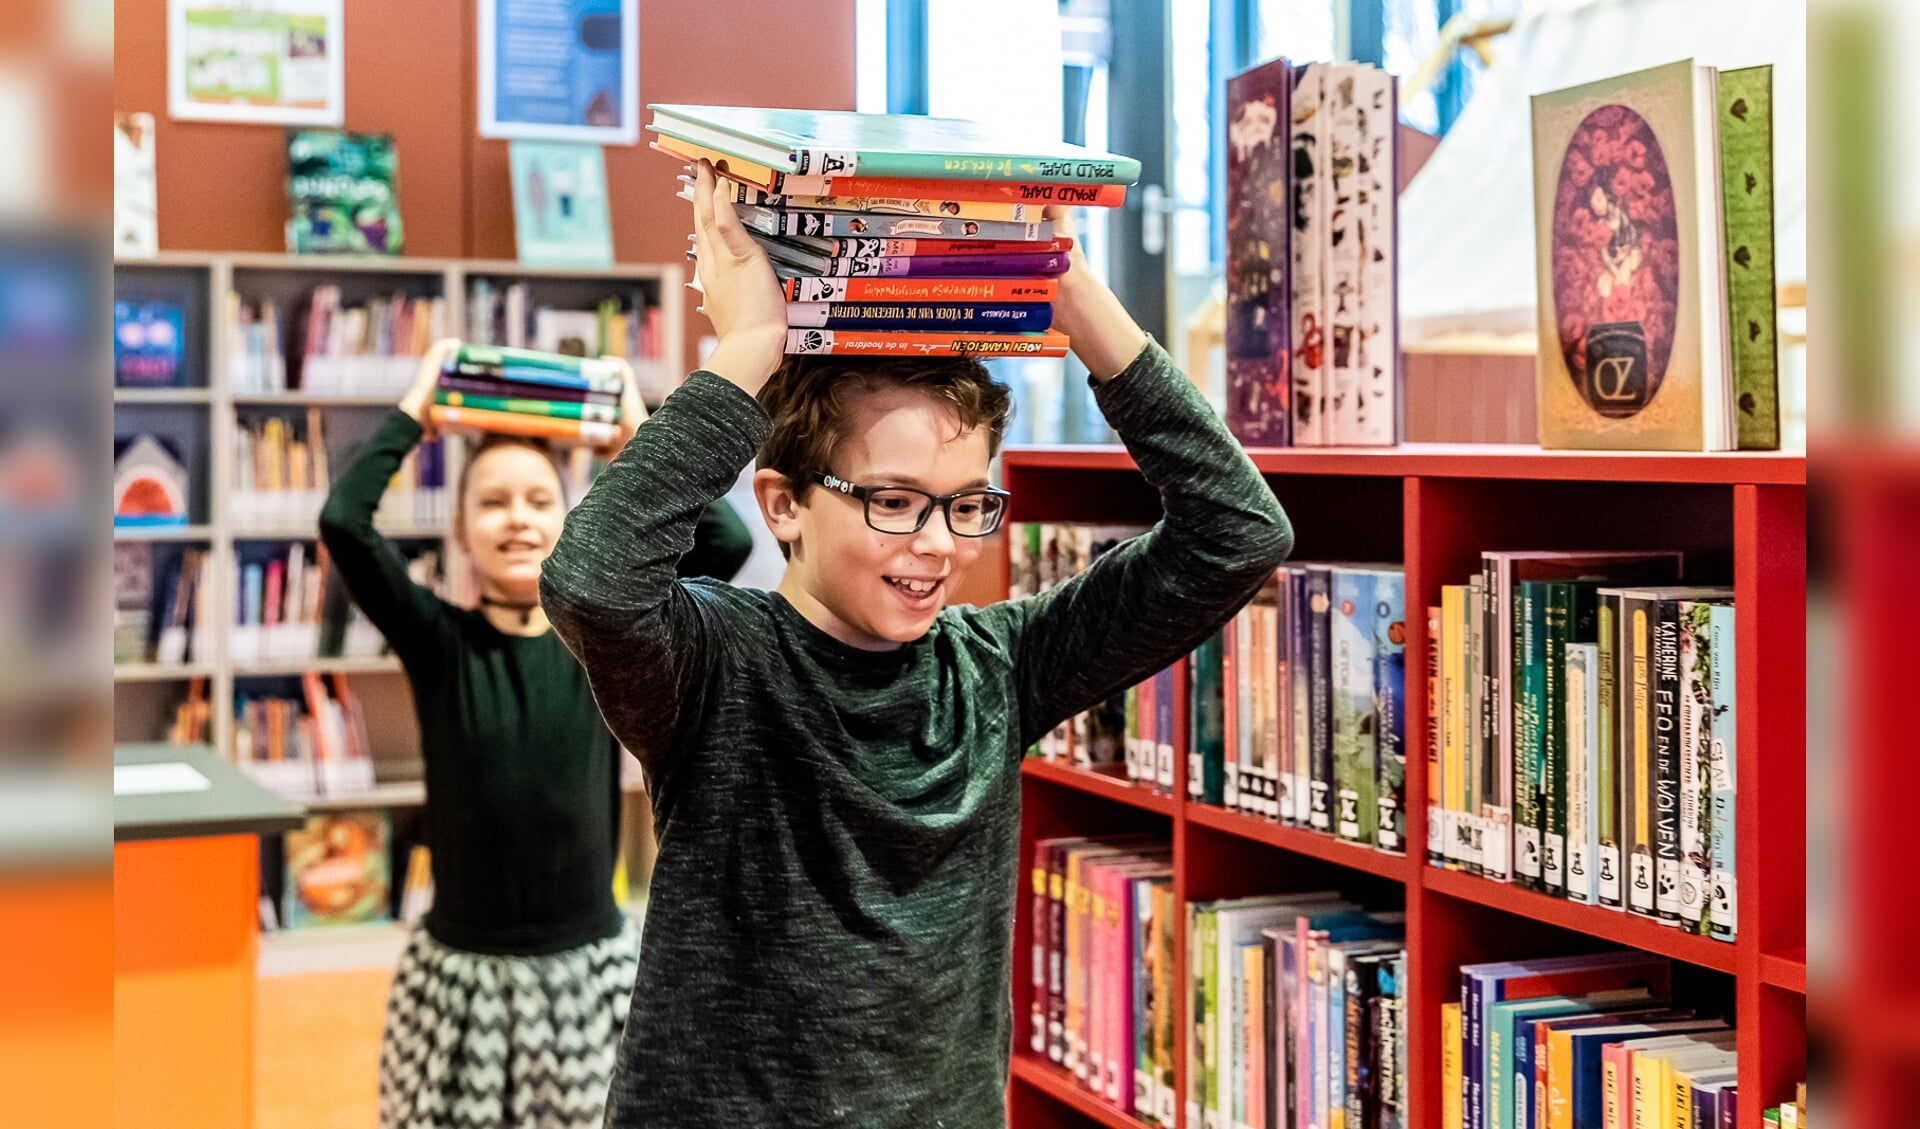 Ontdek de mooiste kinderboeken tijdens de Kinderboekenproeverij in Bibliotheek De Mariënburg! 